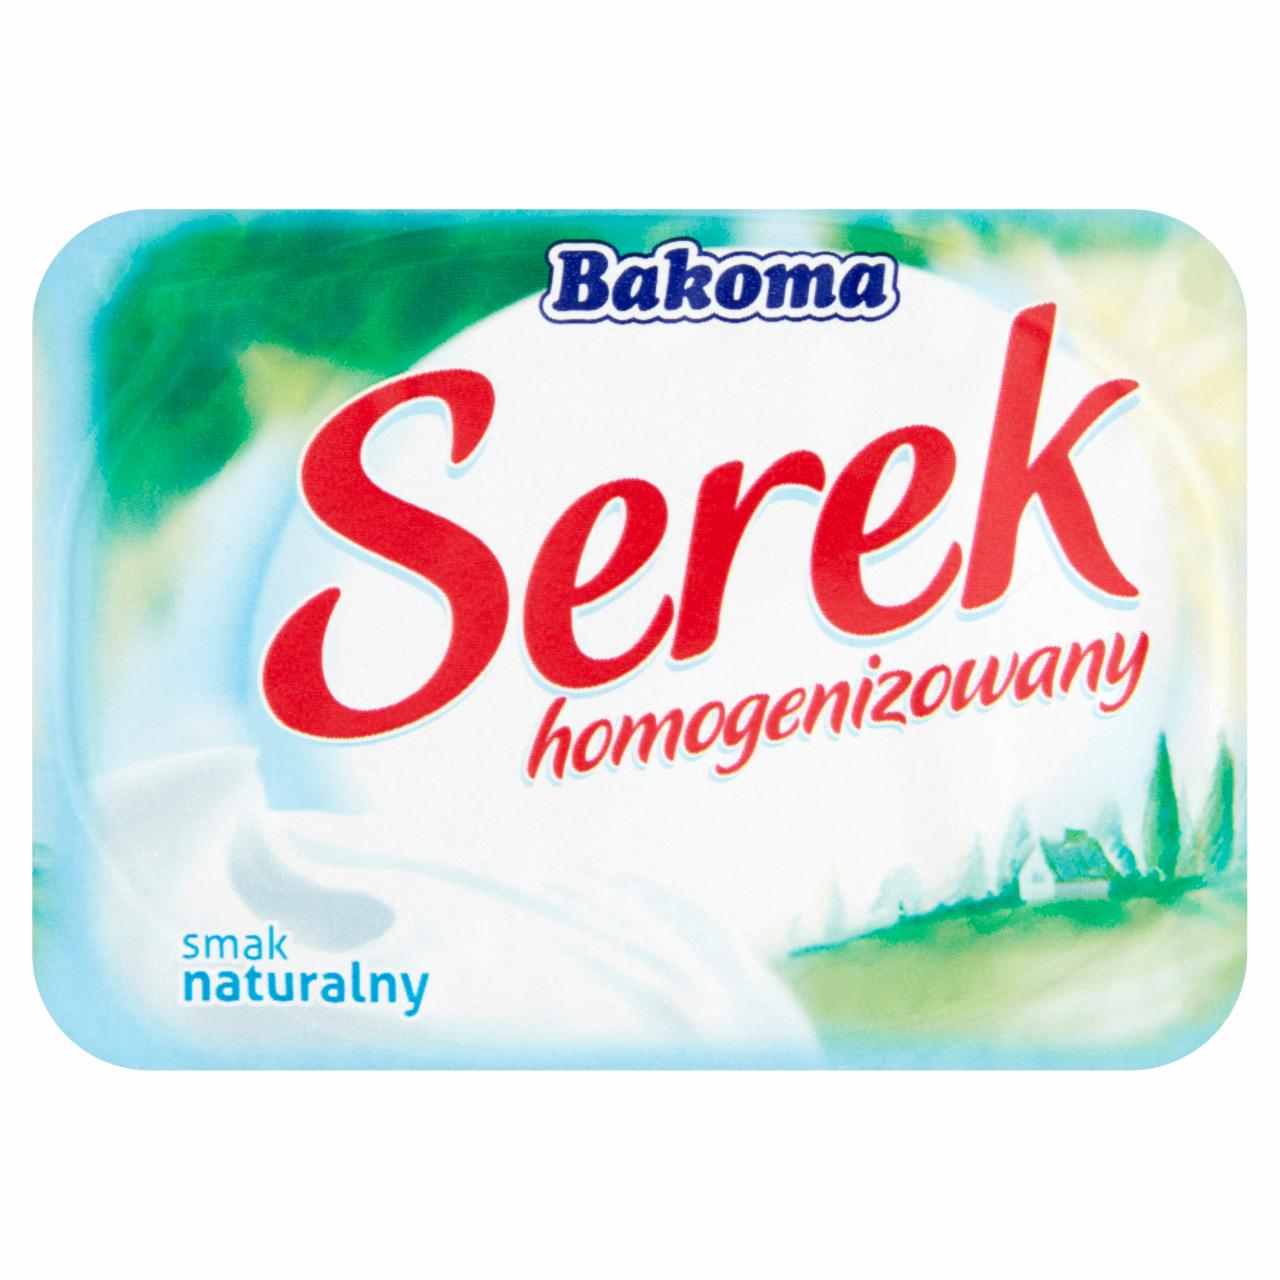 Zdjęcia - Bakoma Serek homogenizowany smak naturalny 150 g